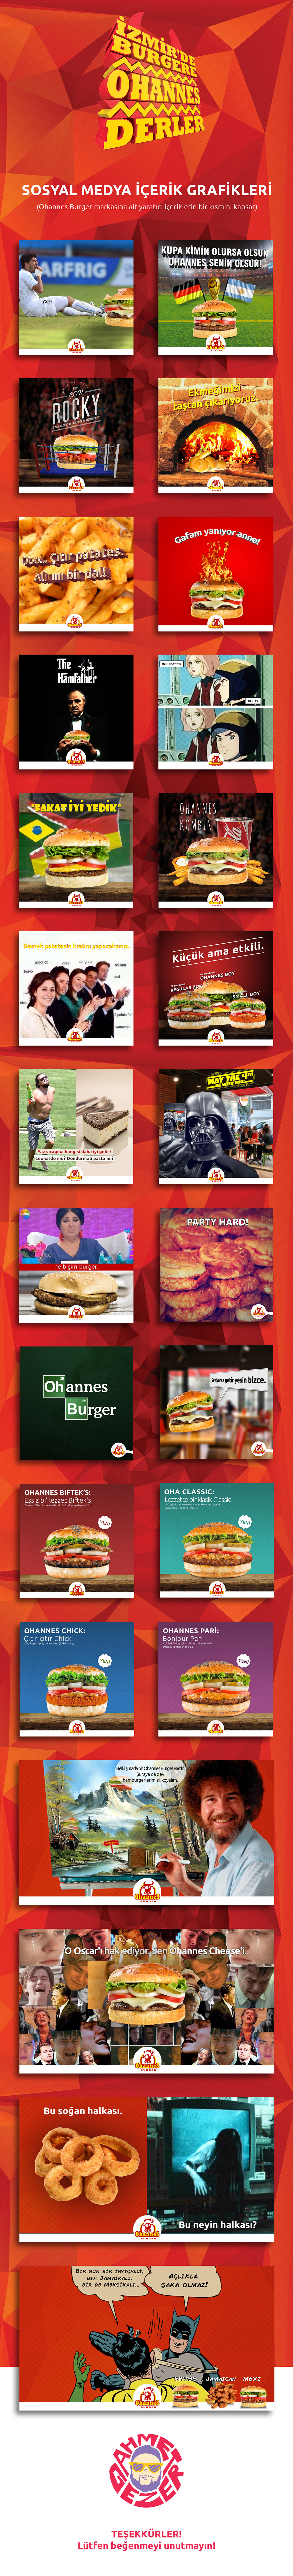 ohannesburger burger Socialmedia sosyal medya grafiktasarımı content socialmediacontent